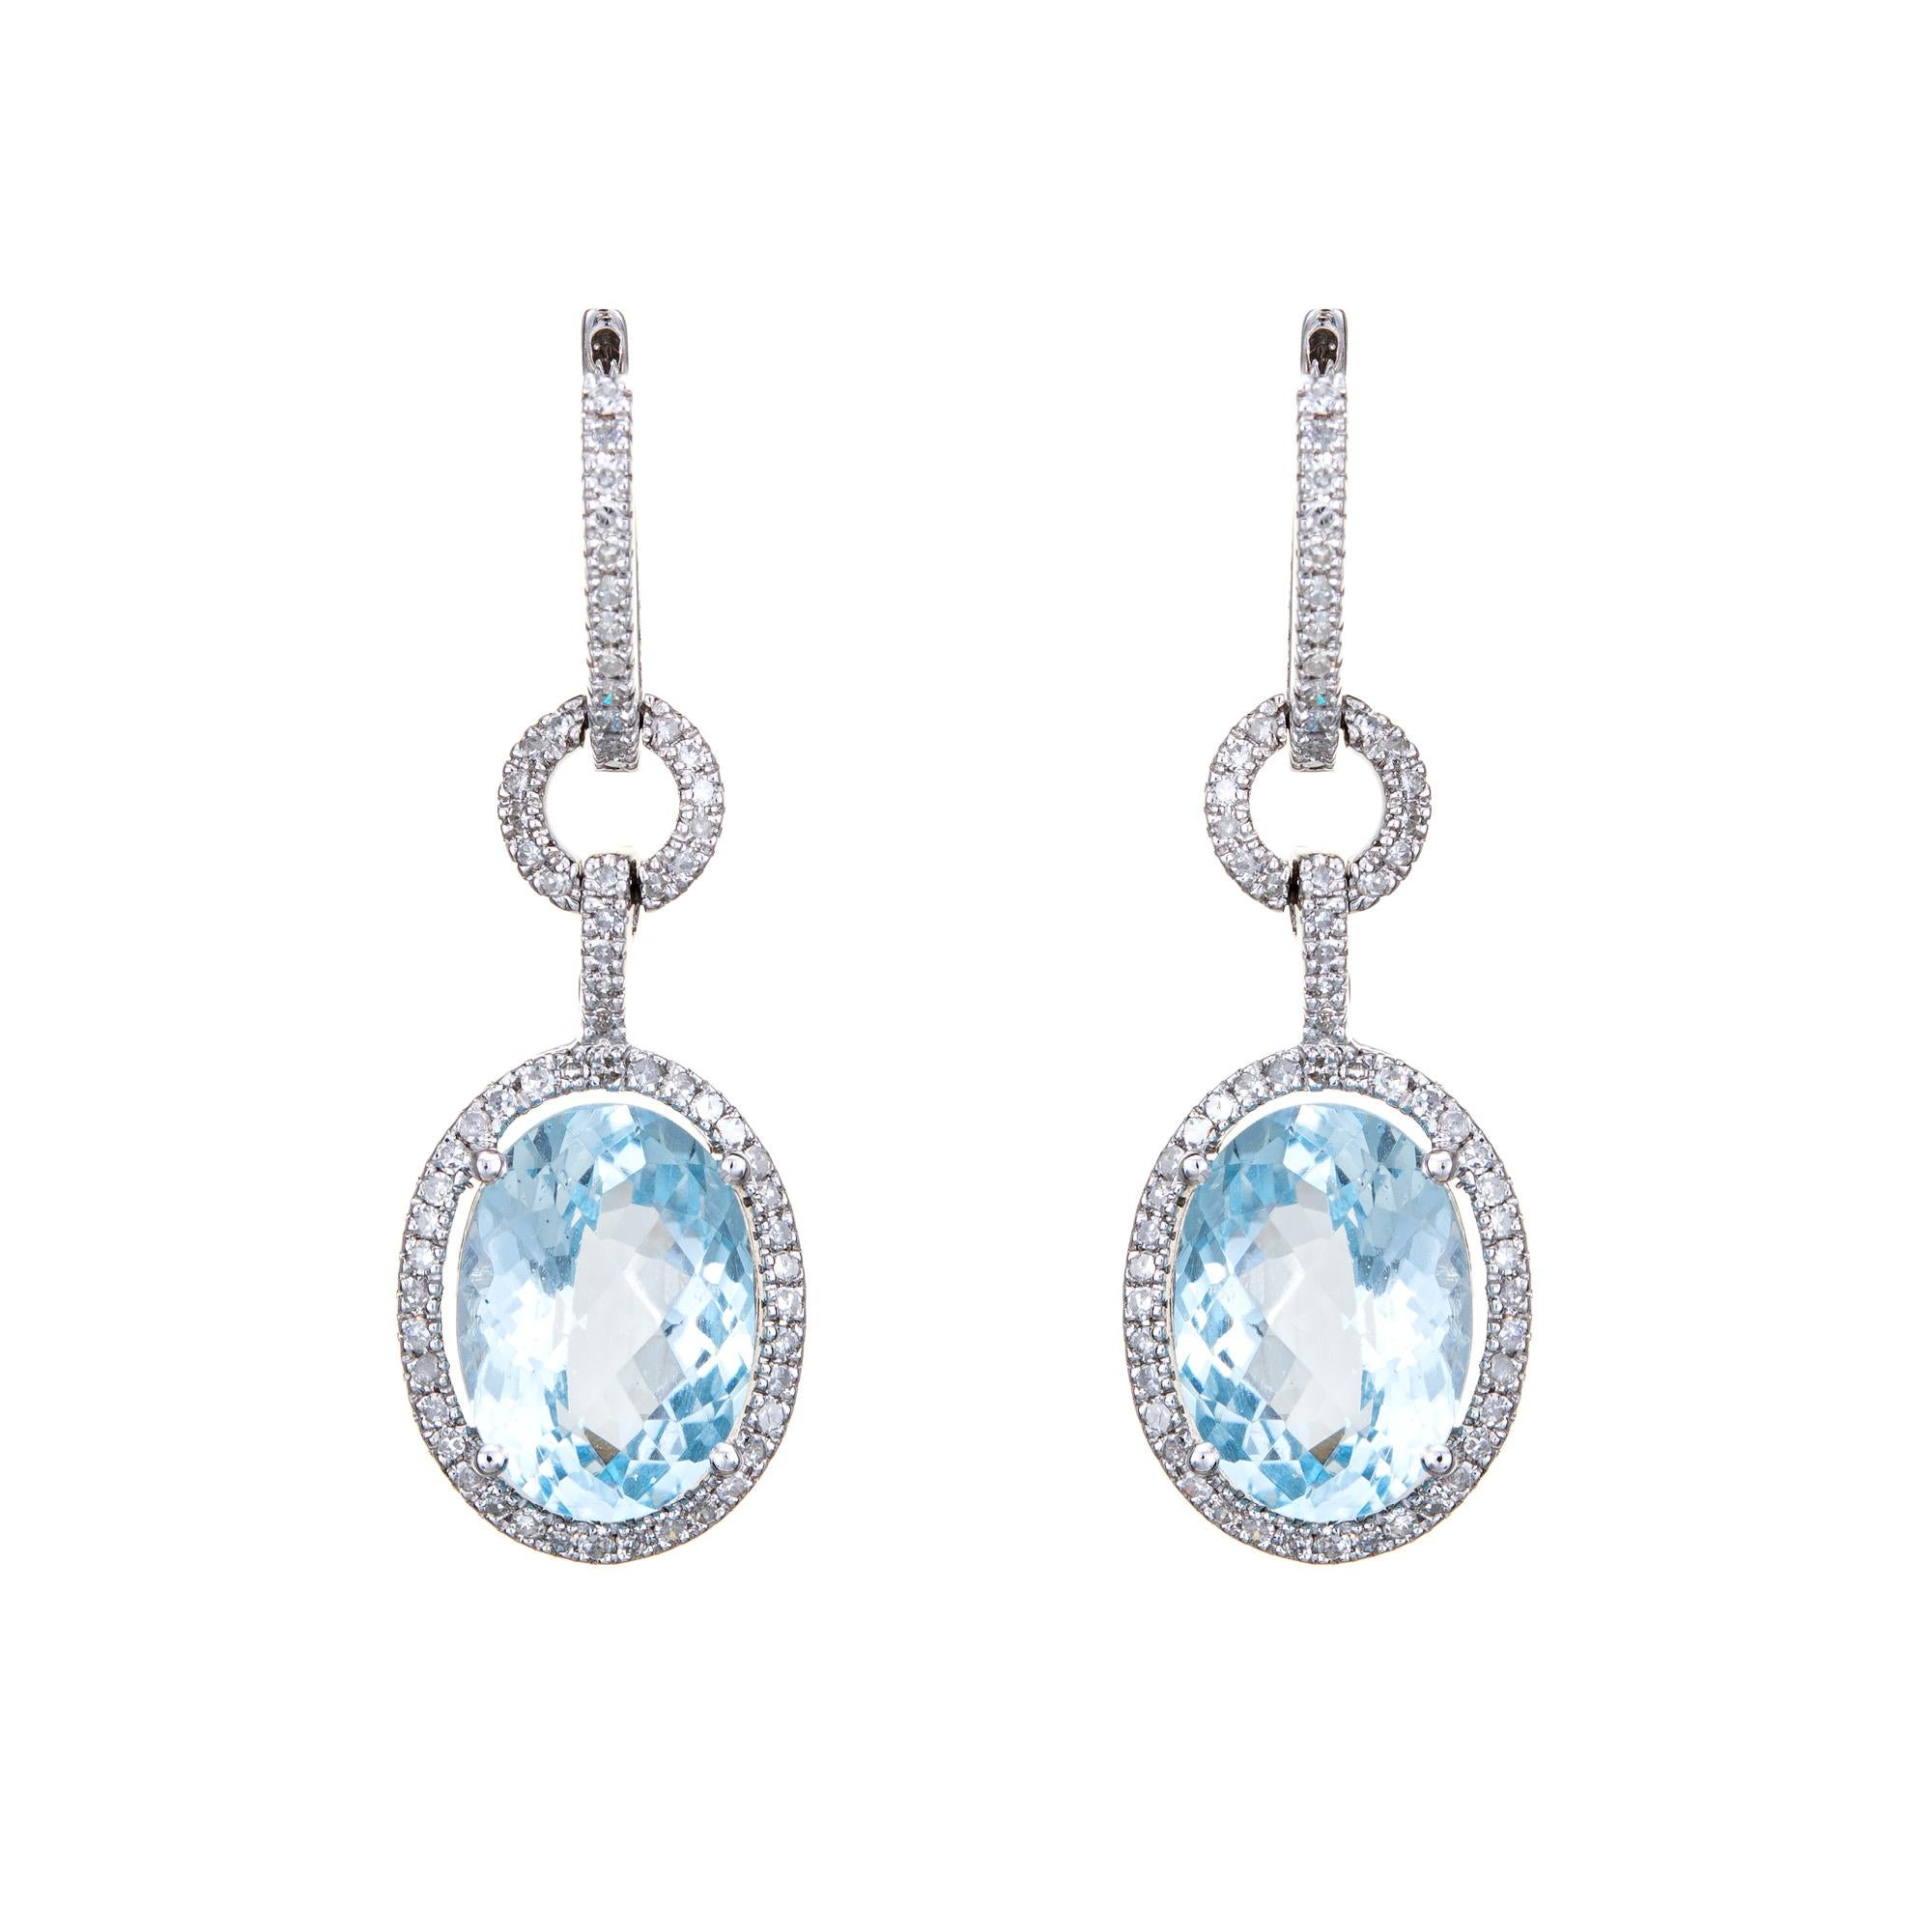 Oval Cut Blue Topaz Diamond Earrings Oval Drops Estate Fine Jewelry Vintage